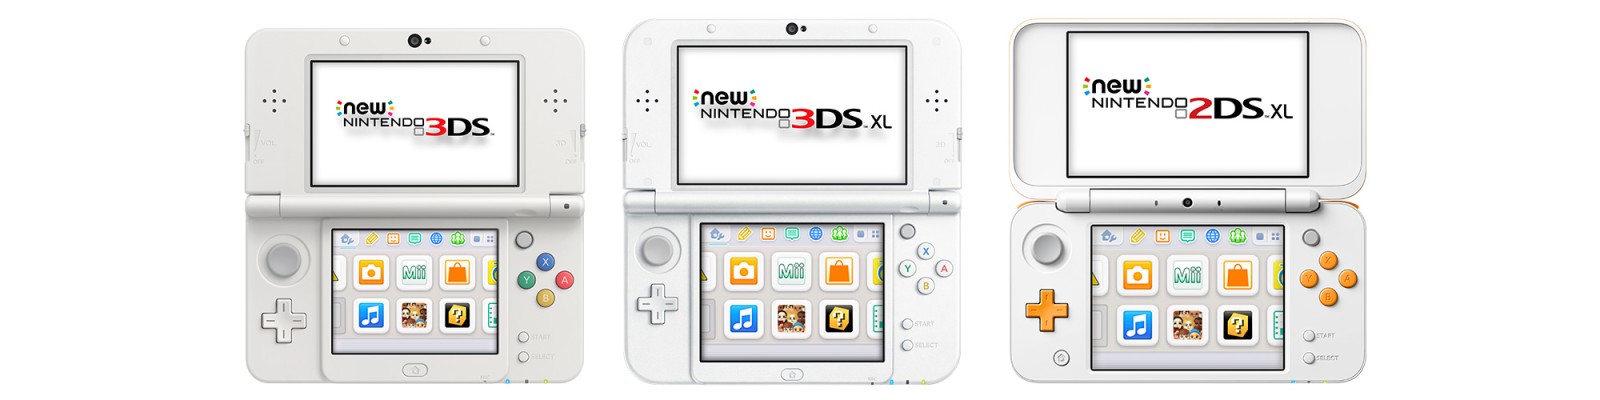 Atención al consumidor - Consolas de la familia New Nintendo 3DS